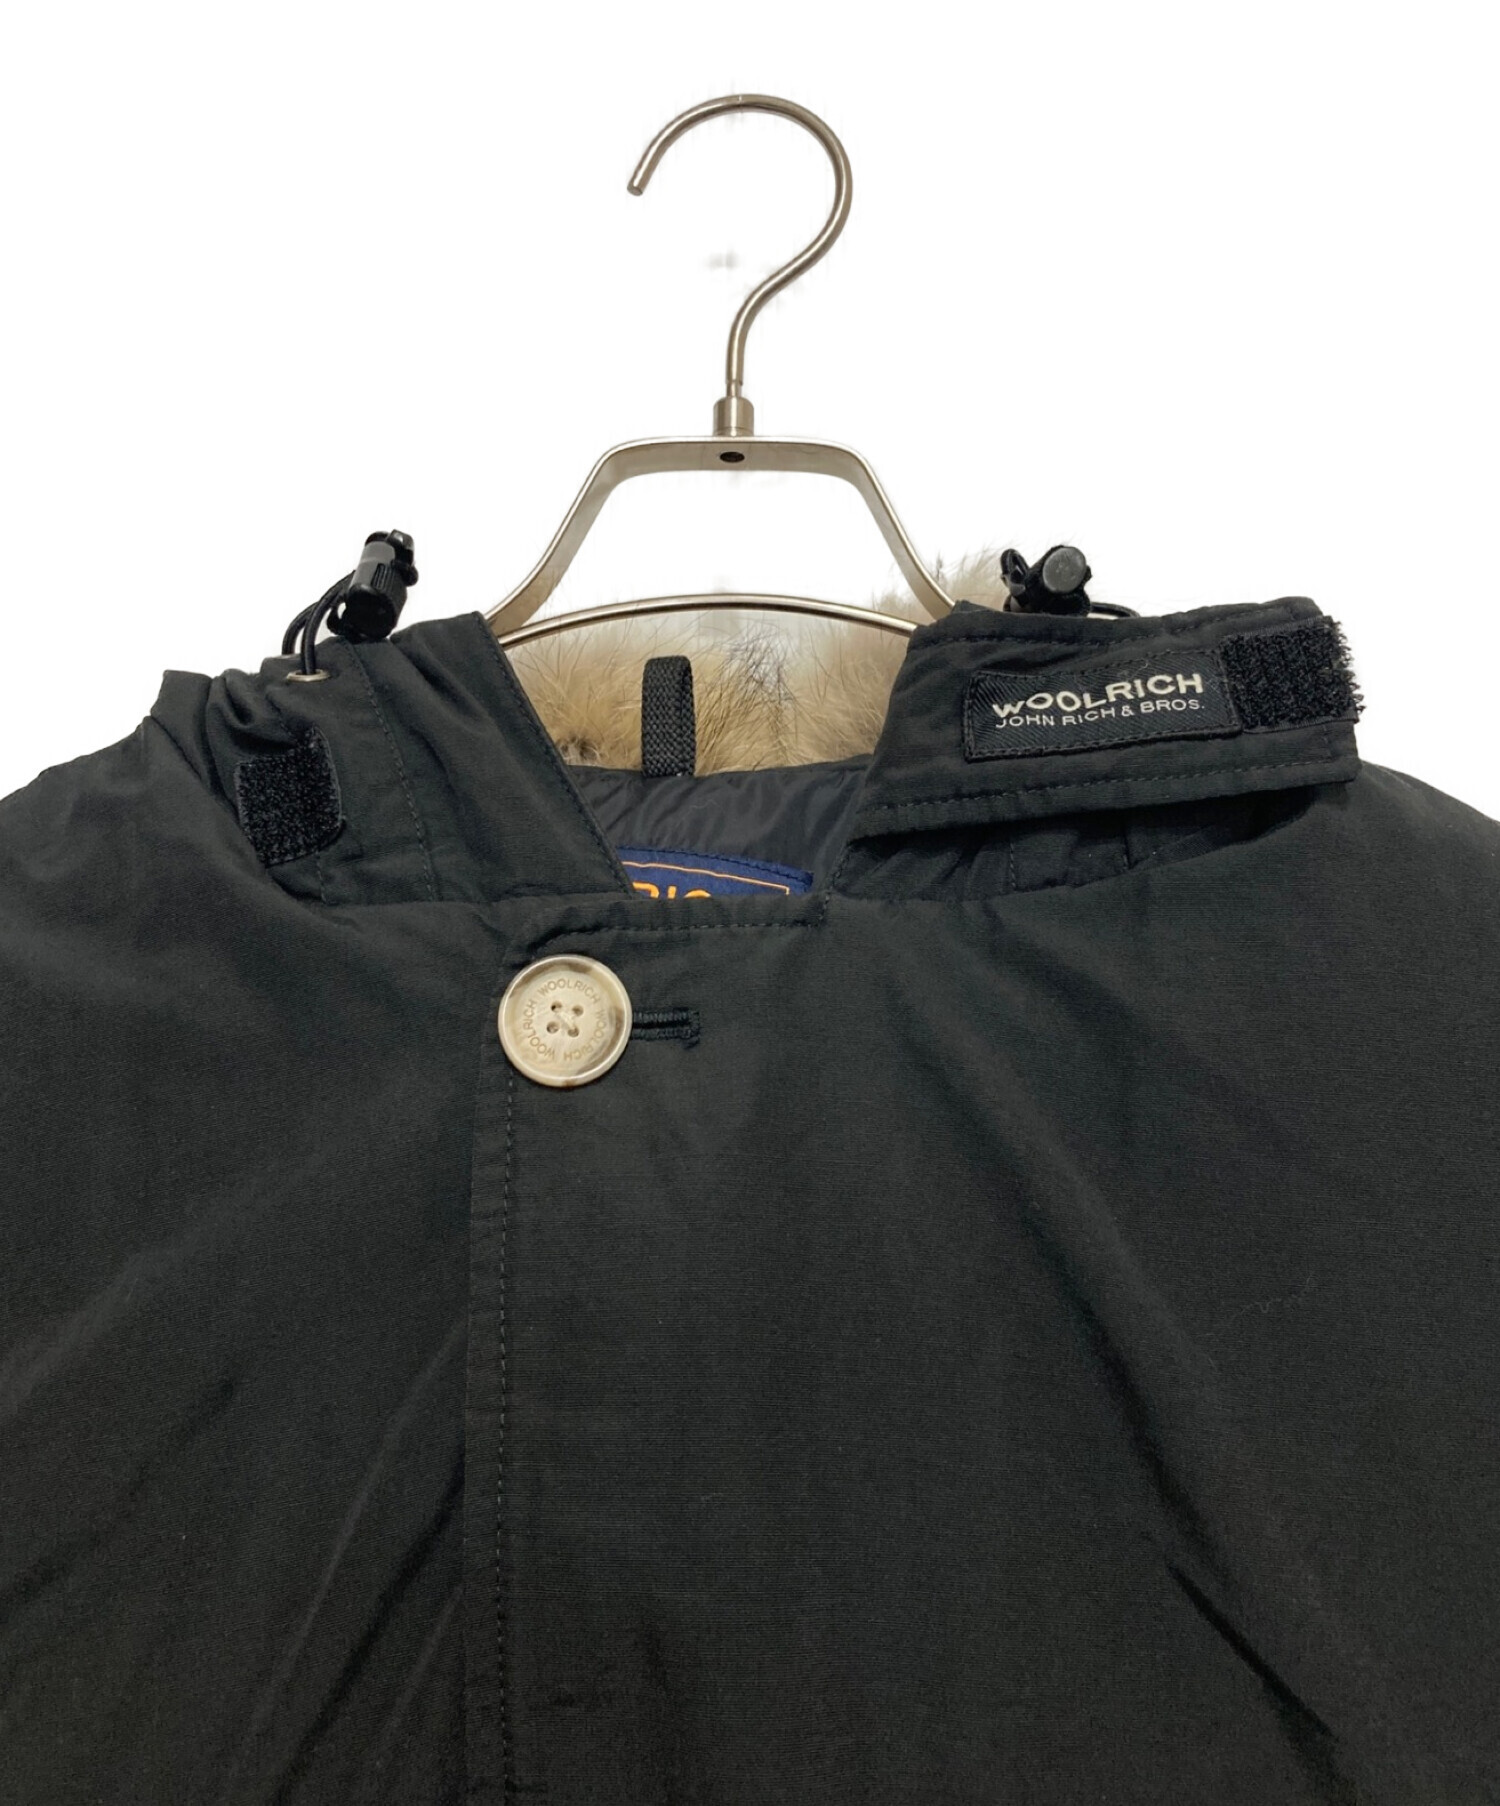 WOOLRICH (ウールリッチ) アークティックパーカーダウンジャケット ブラック サイズ:S